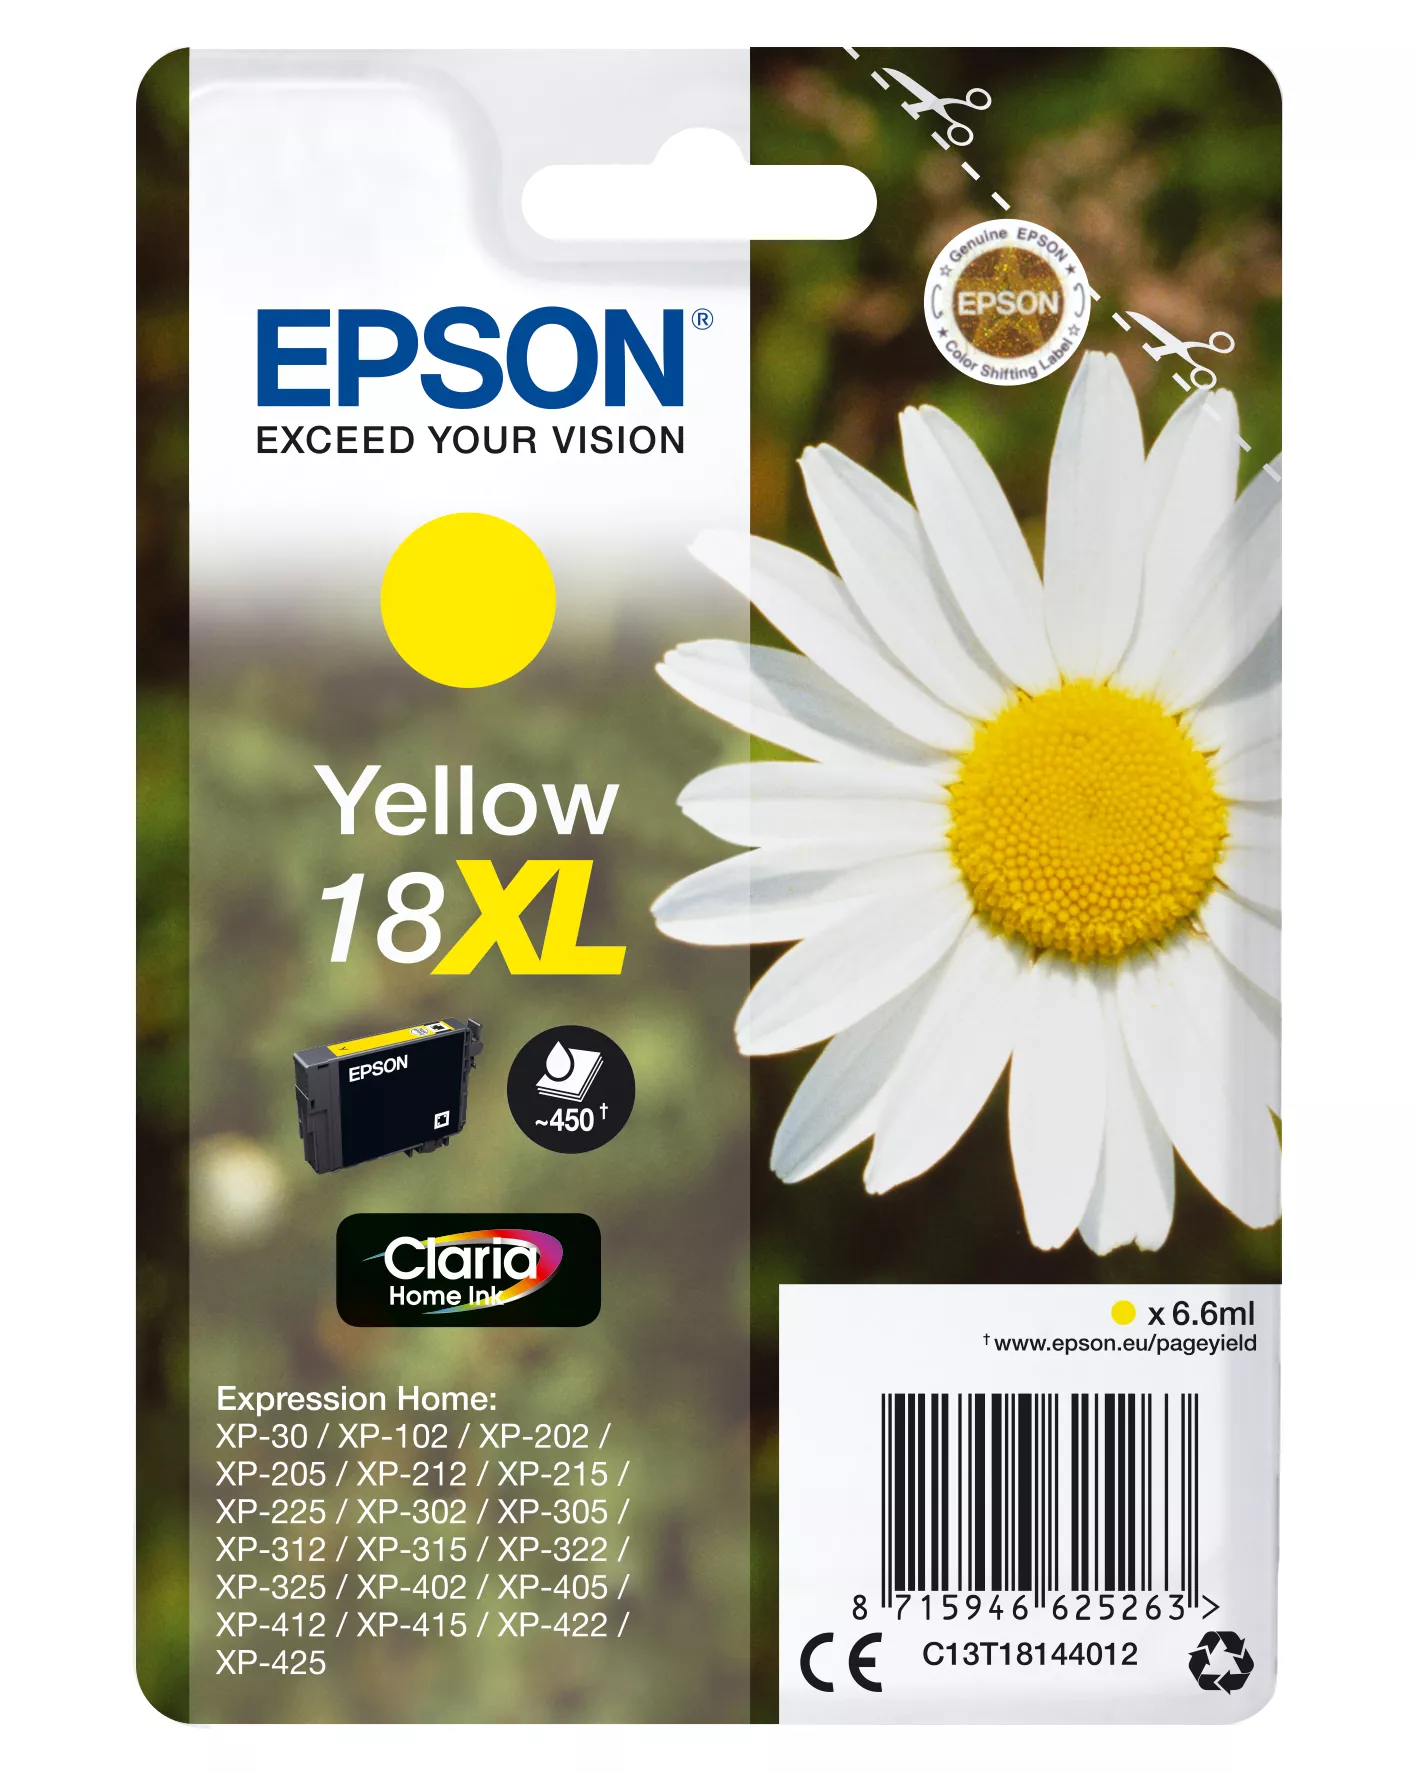 Achat EPSON 18XL cartouche dencre jaune haute capacité 6.6ml - 8715946625263